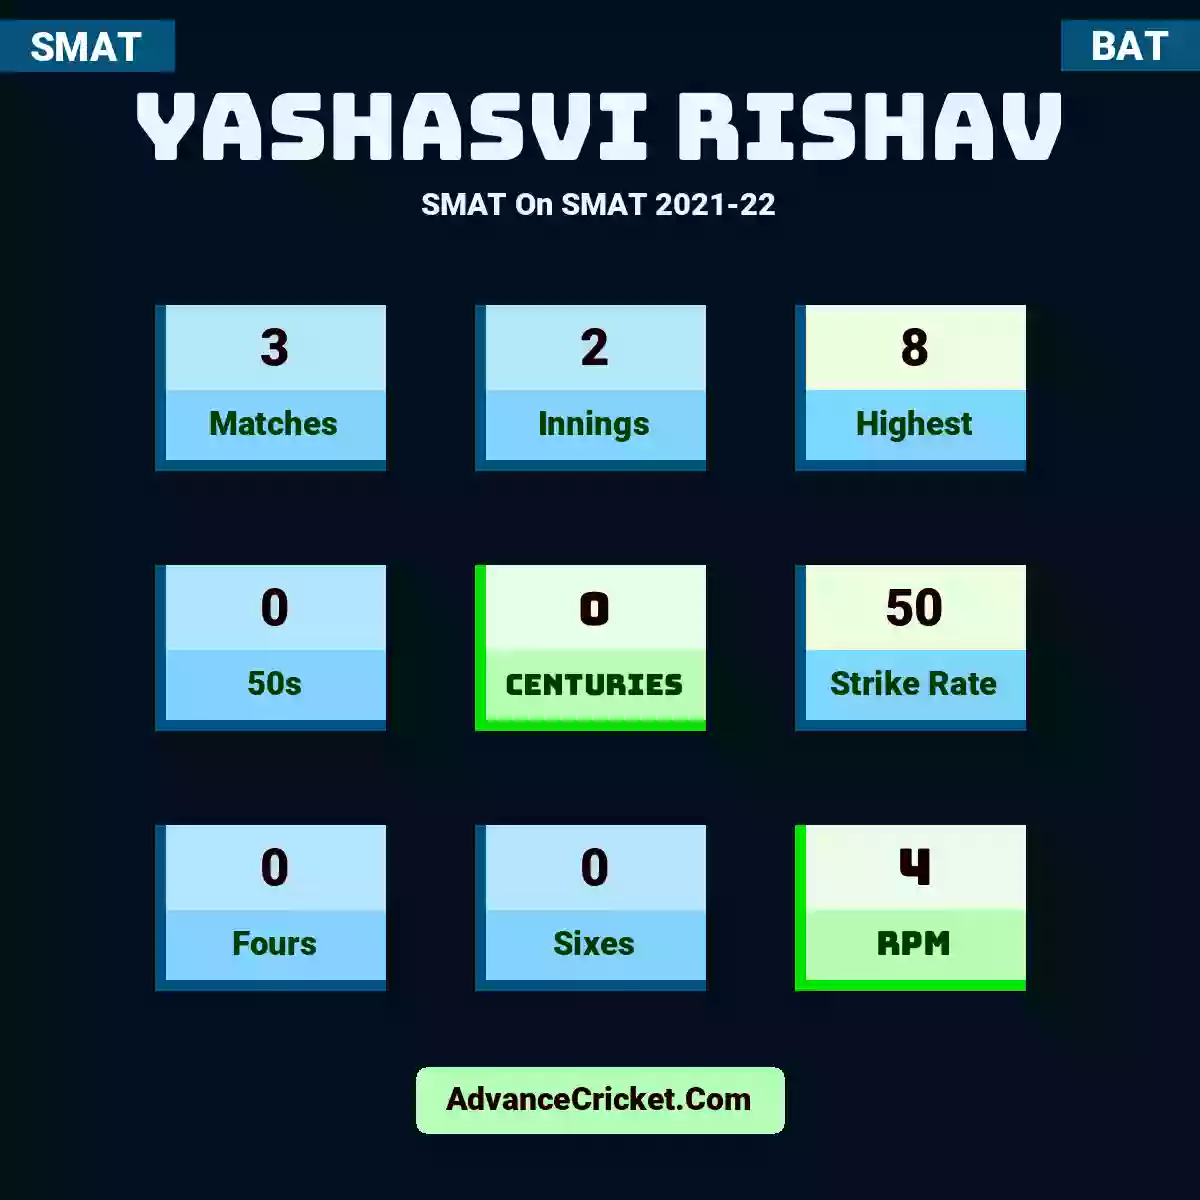 Yashasvi Rishav SMAT  On SMAT 2021-22, Yashasvi Rishav played 3 matches, scored 8 runs as highest, 0 half-centuries, and 0 centuries, with a strike rate of 50. Yashasvi.Rishav hit 0 fours and 0 sixes, with an RPM of 4.